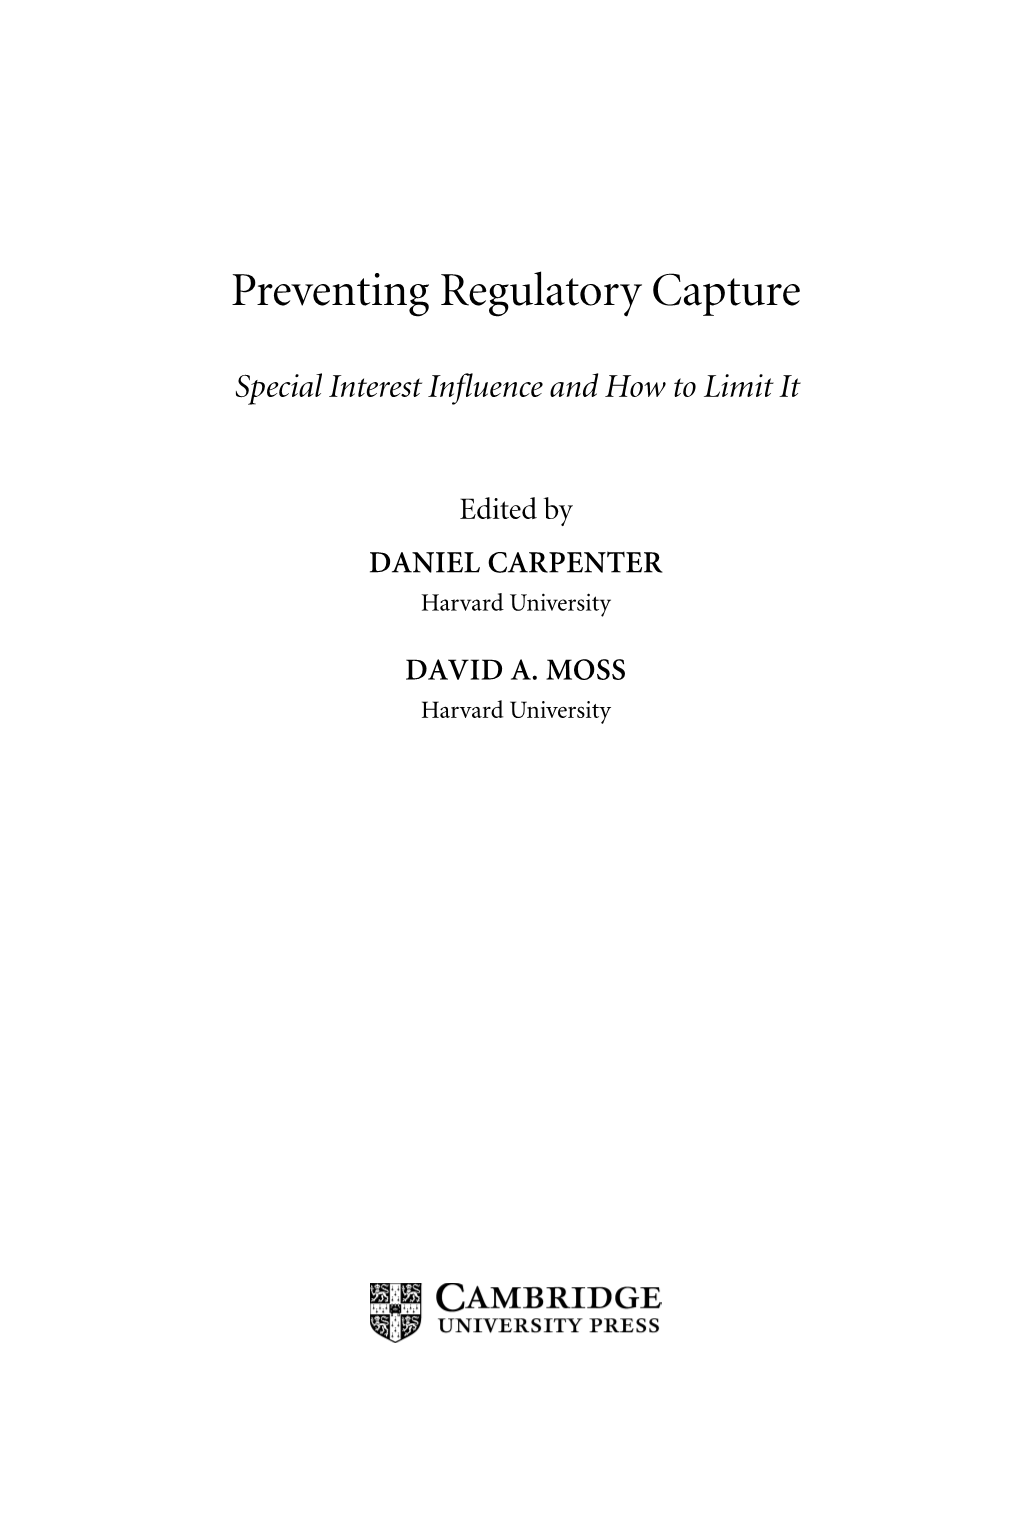 Regulatory Capture